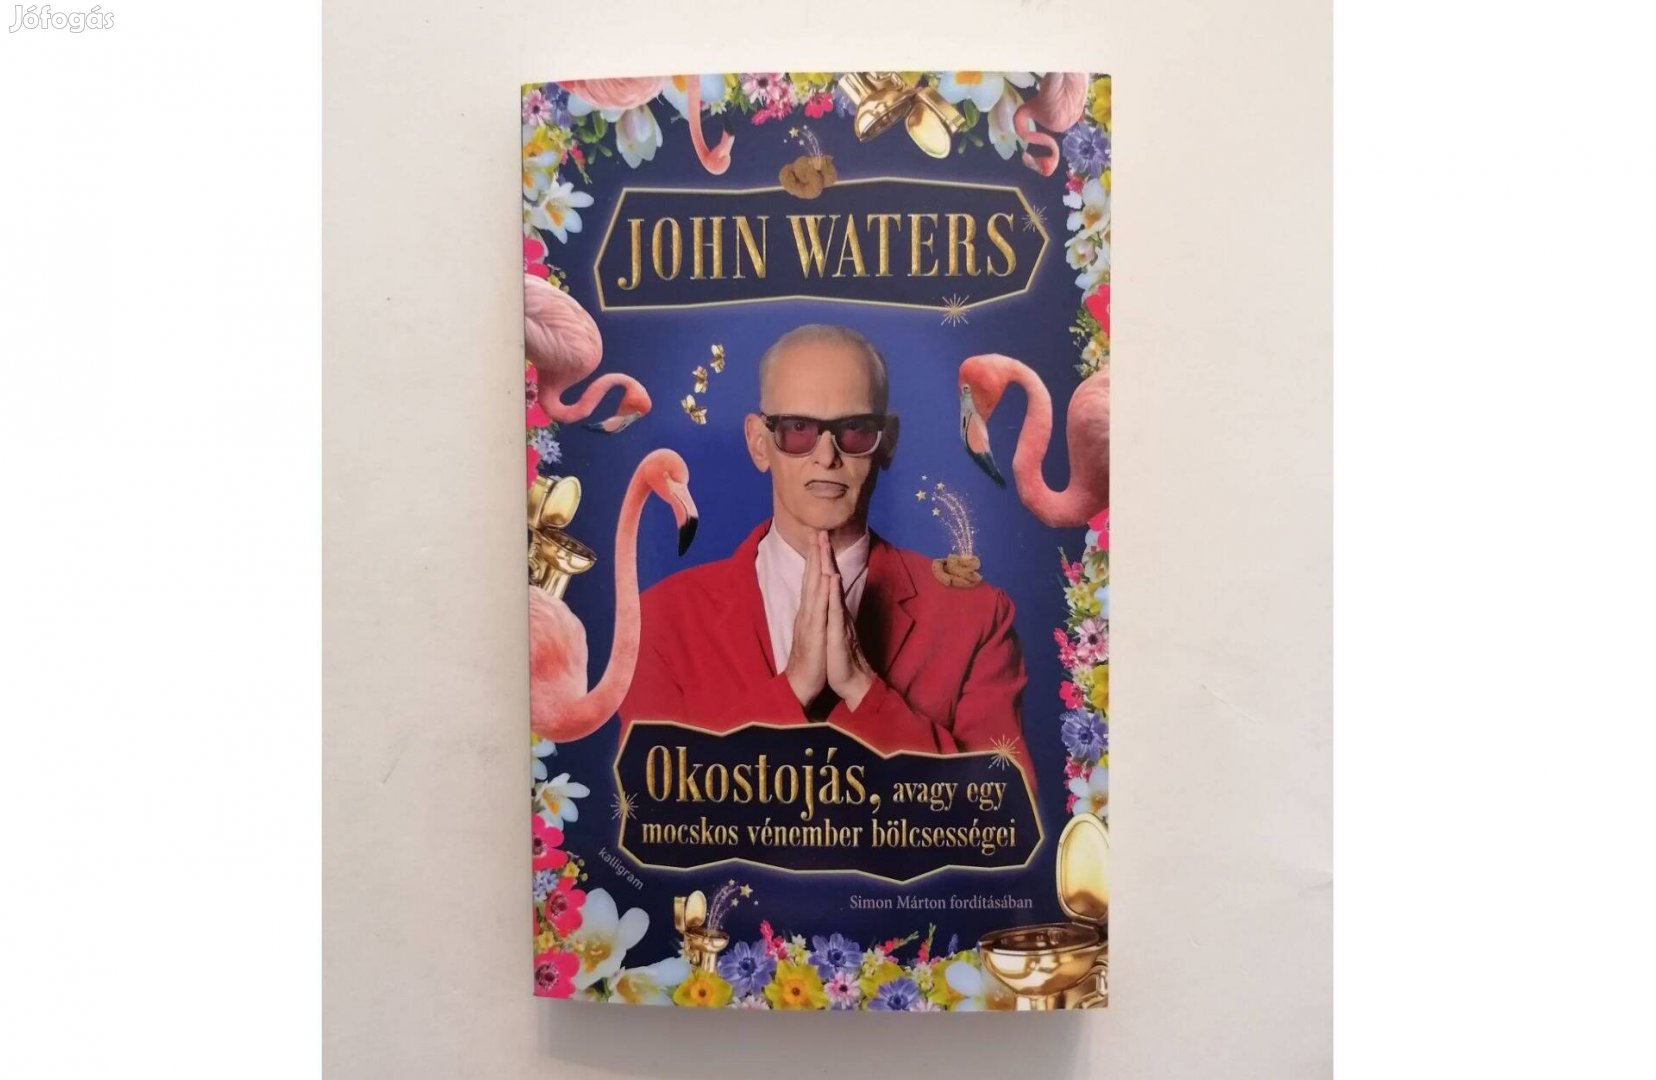 John Waters: Okostojás, avagy egy mocskos vénember bölcsességei